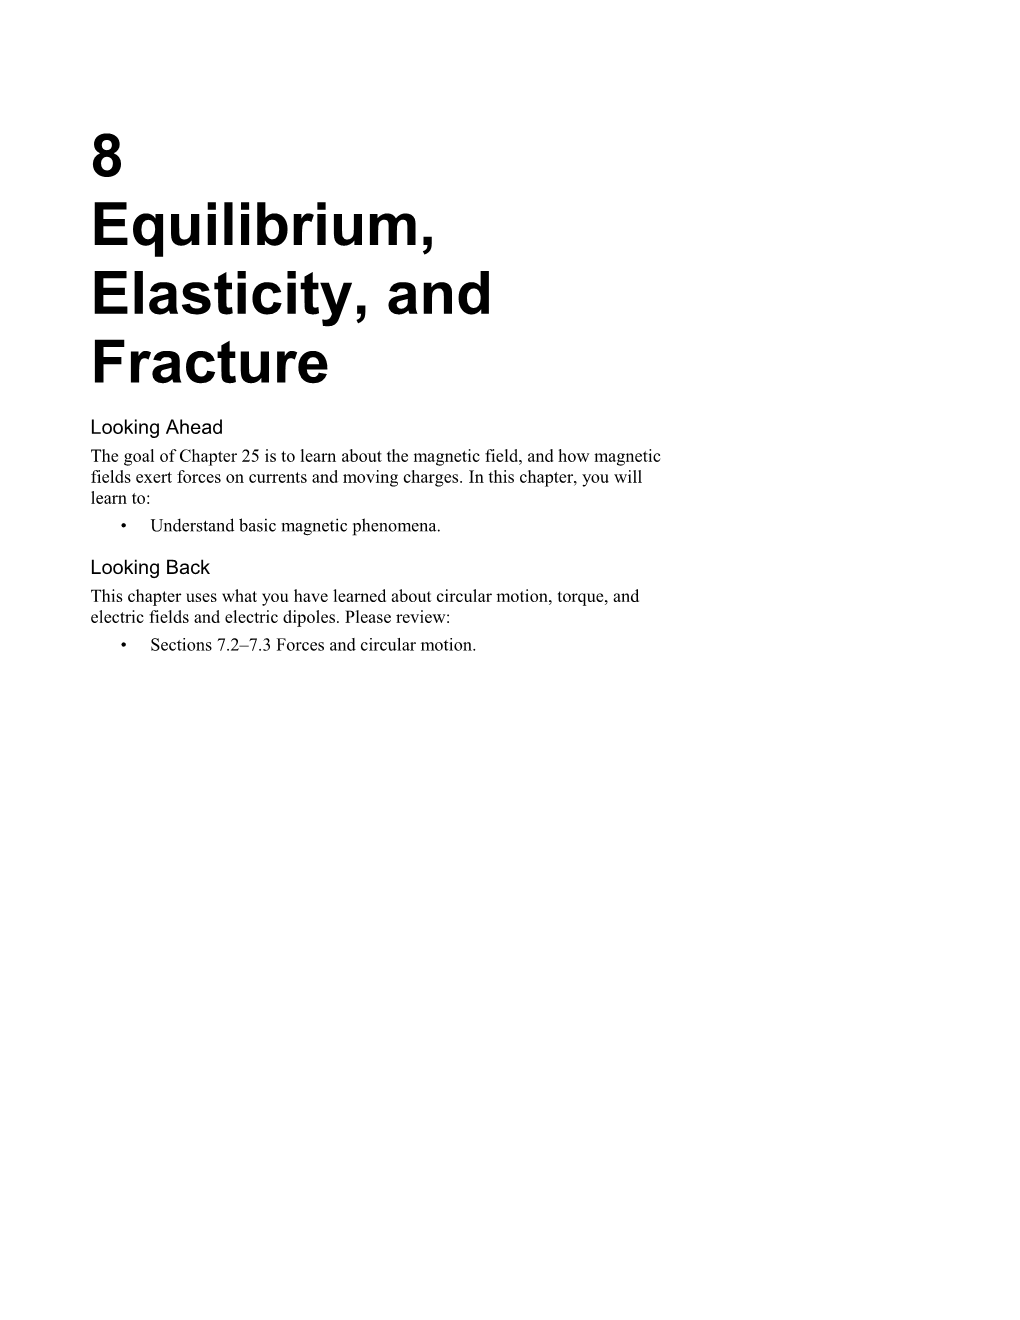 Equilibrium, Elasticity, and Fracture